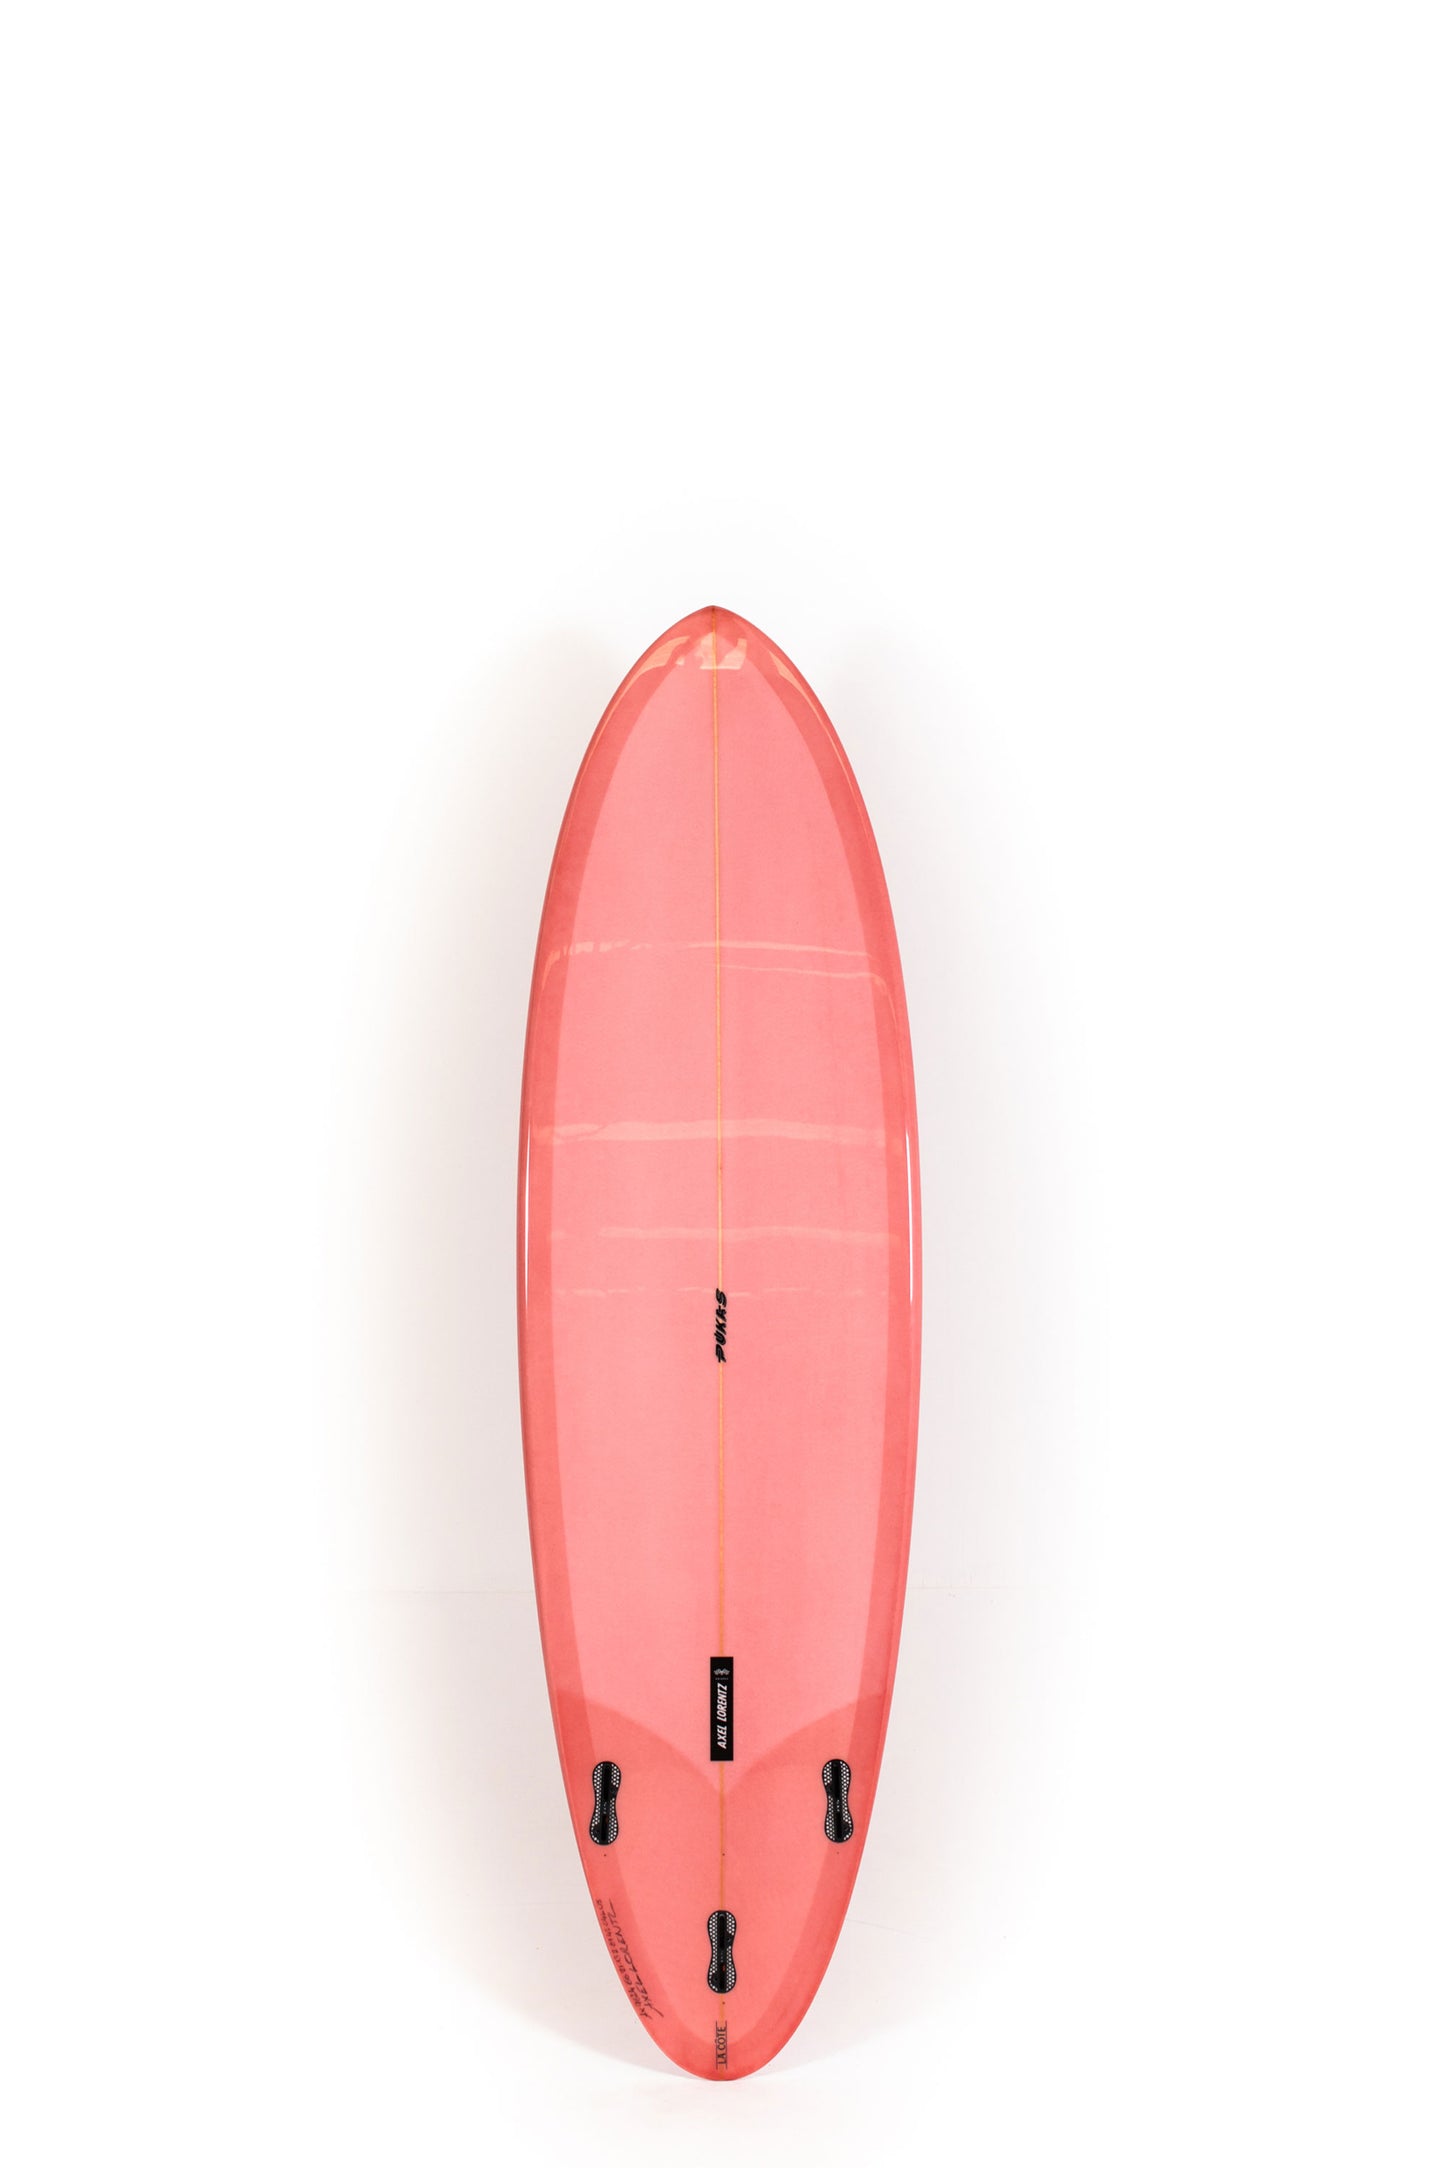 Pukas Surf Shop - Pukas Surfboard - LA CÔTE by Axel Lorentz - 6'6" x 21,13 x 2,81 - 42L -  AX09624